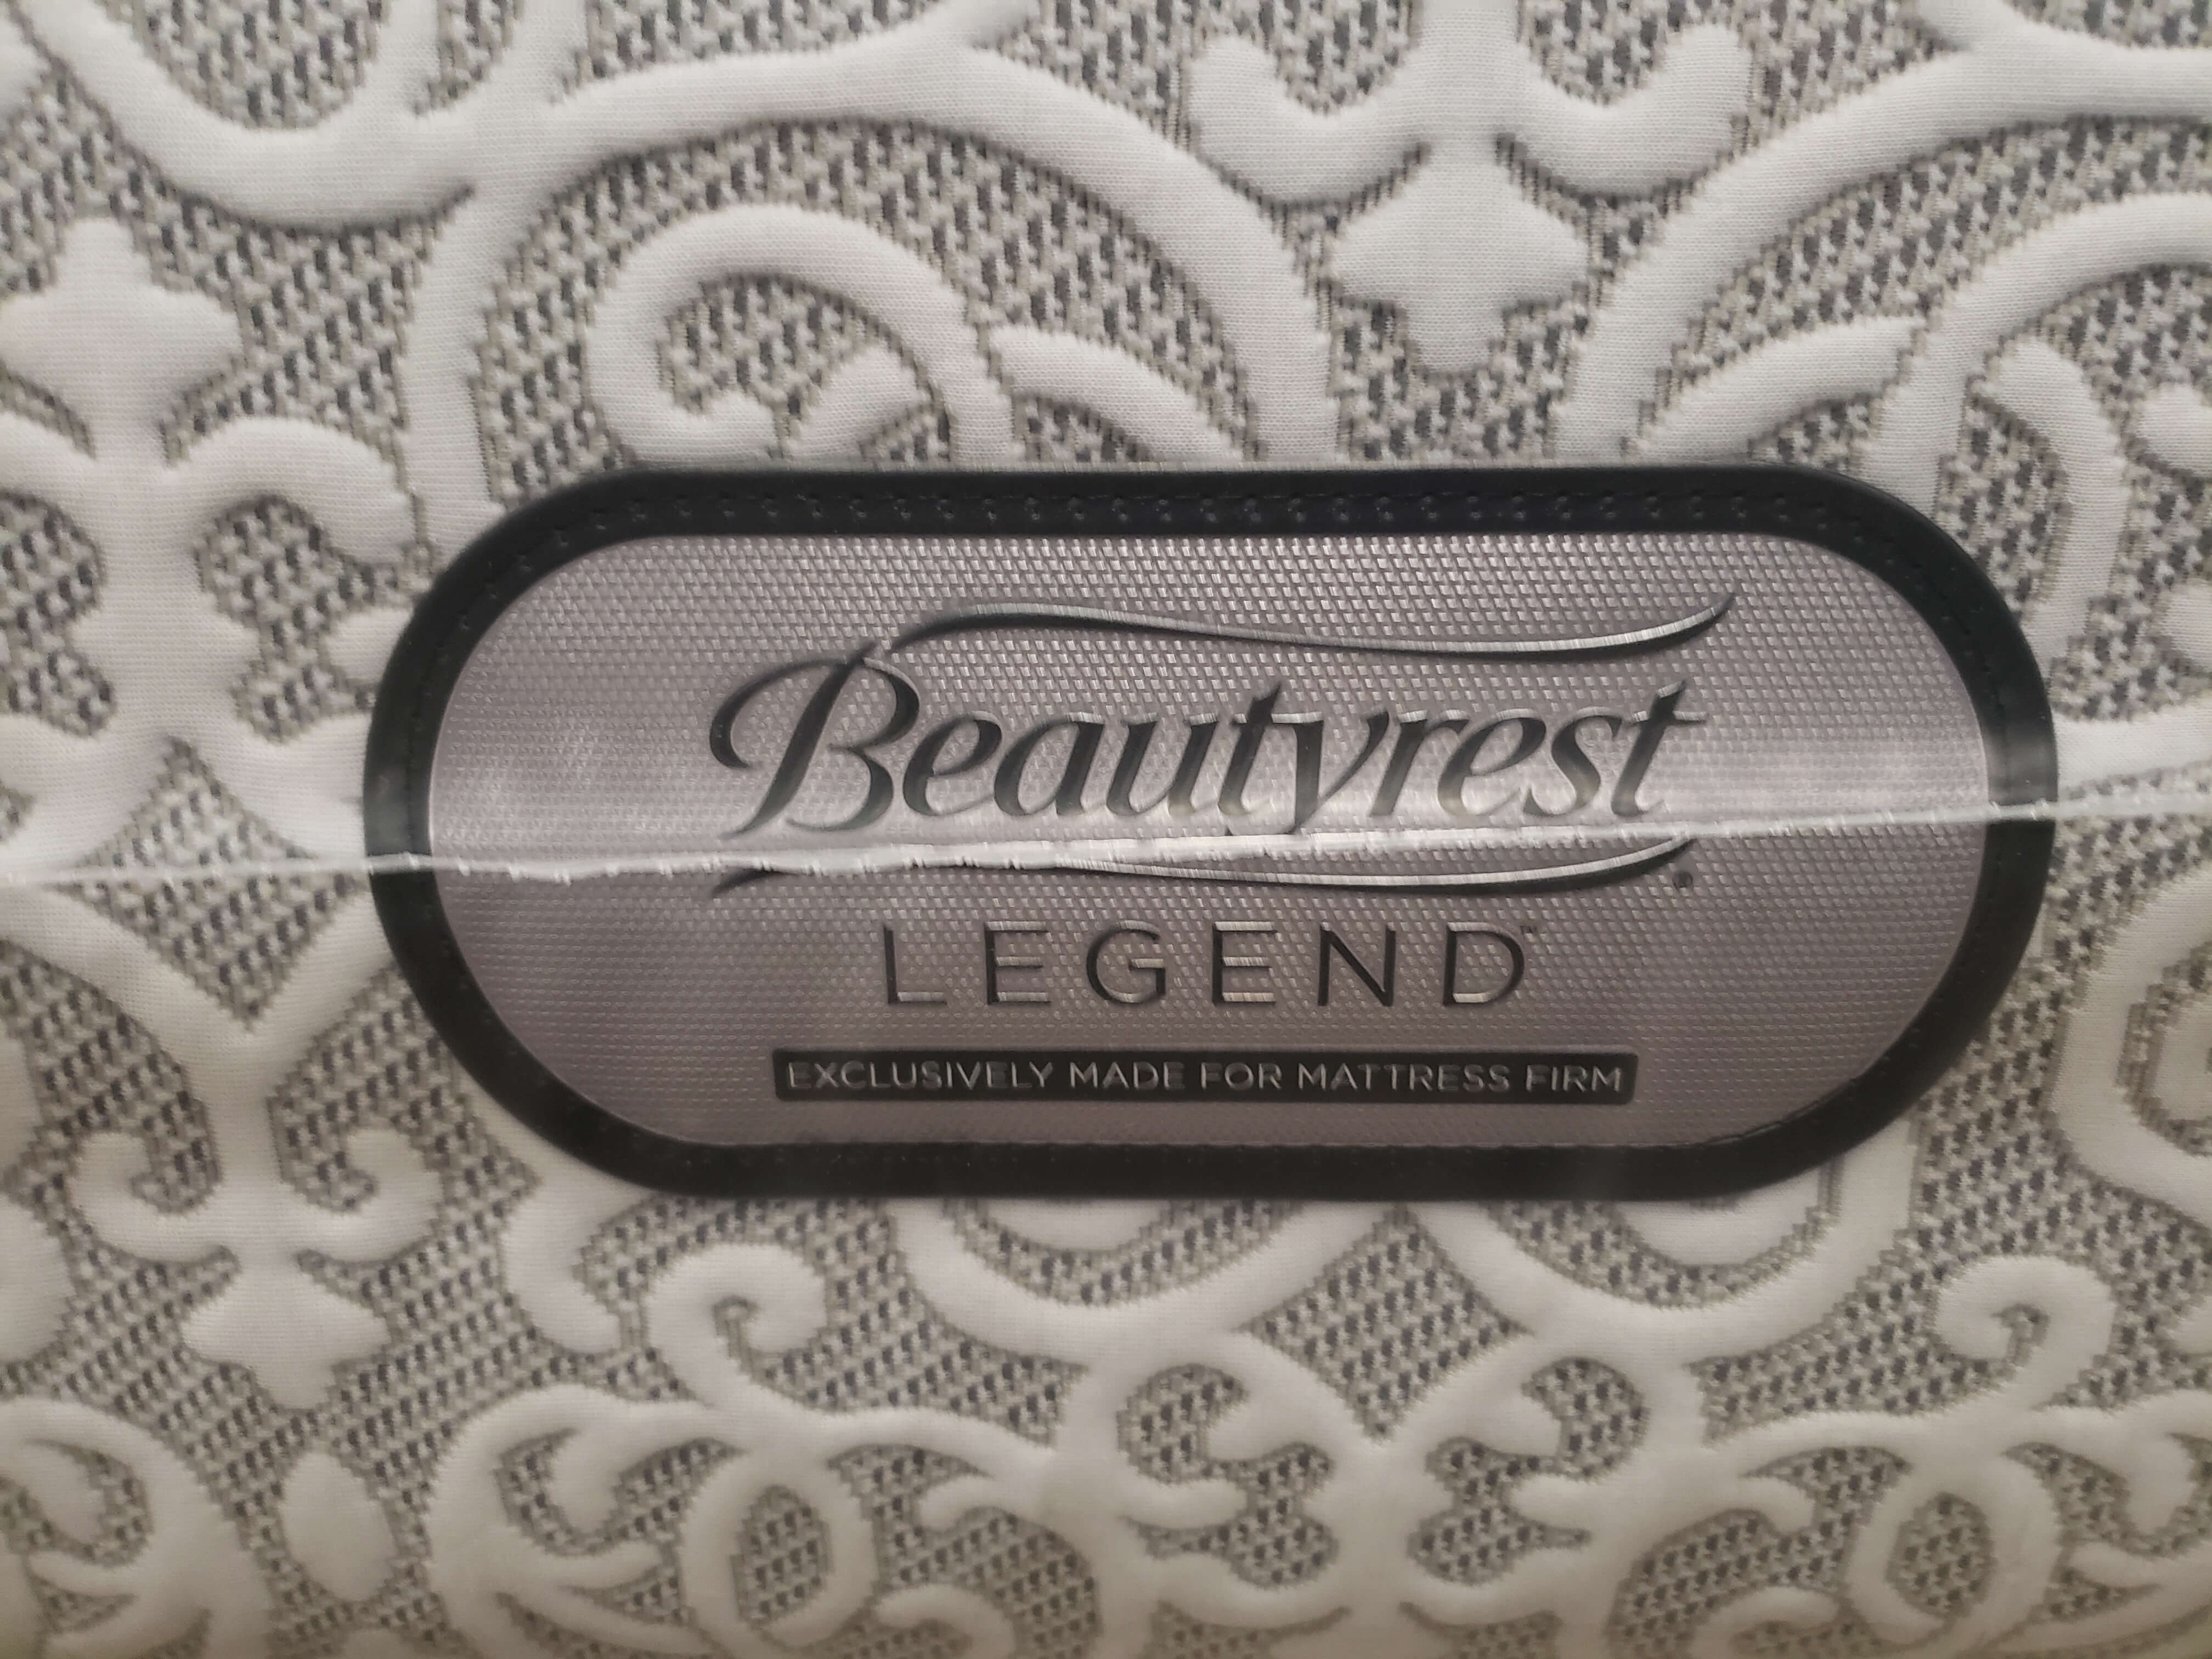 beautyrest legend mattress bad reviews